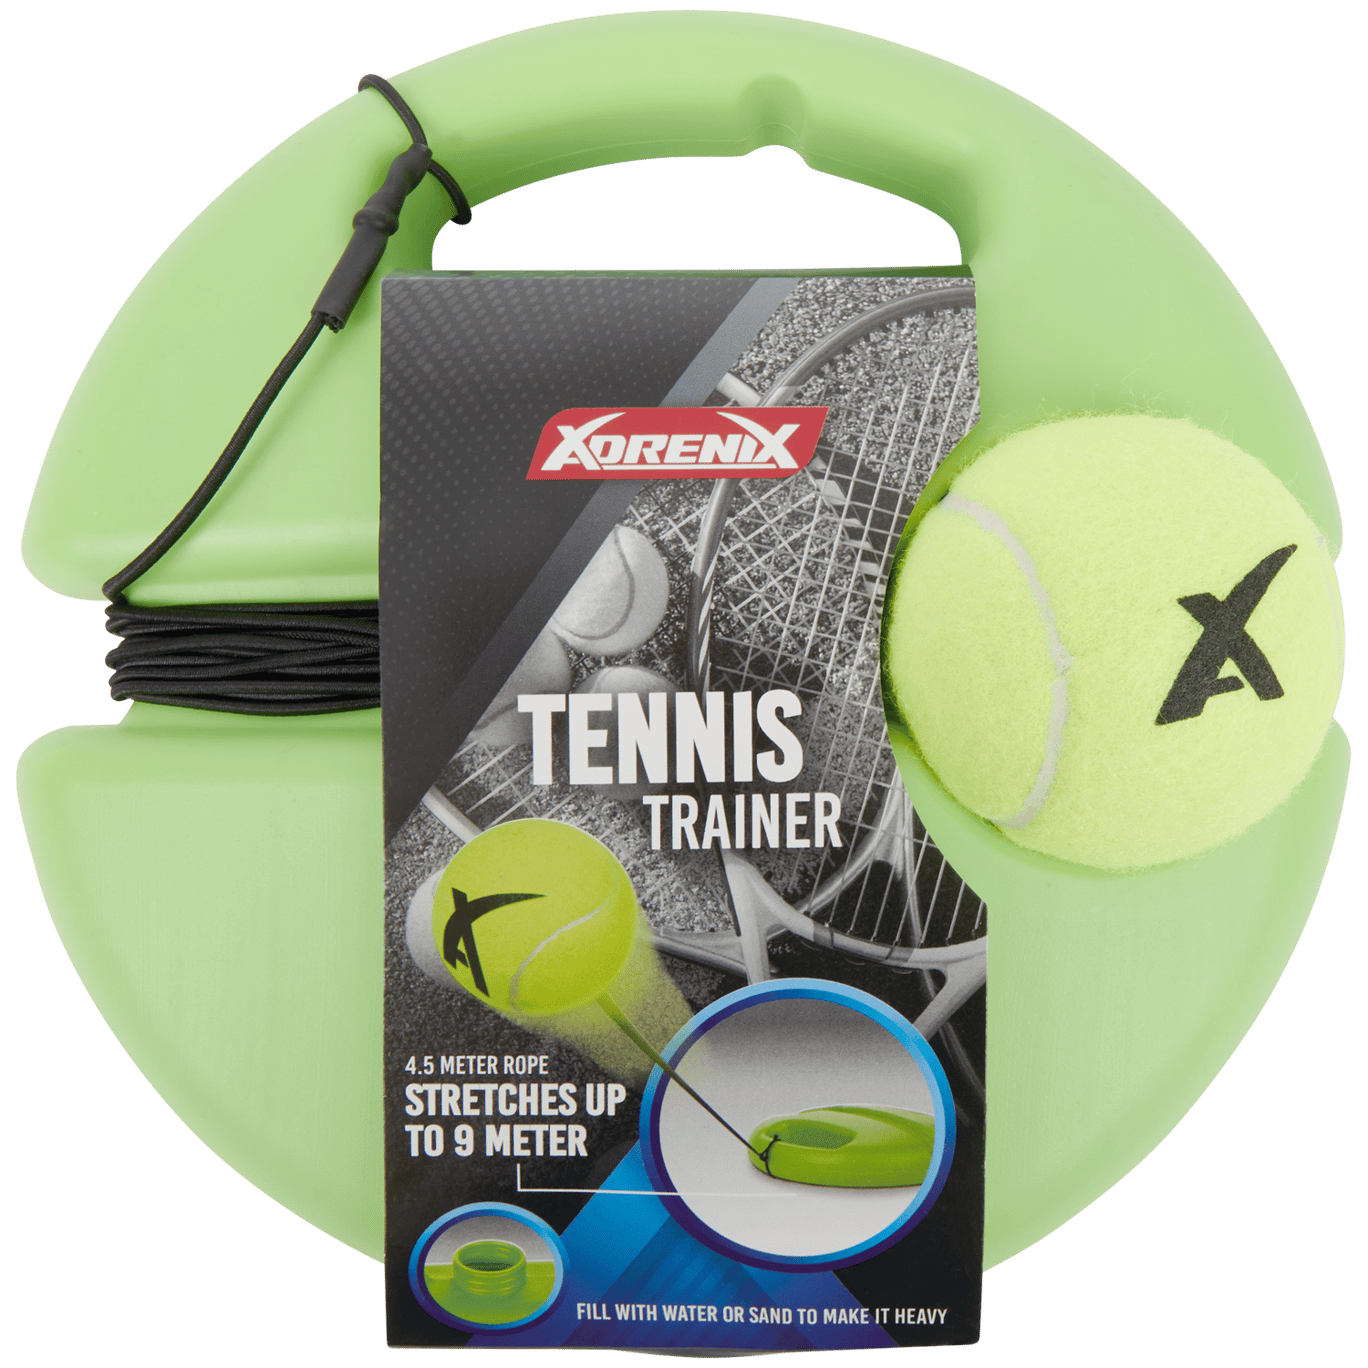 Zestaw treningowy do tenisa XdreniX